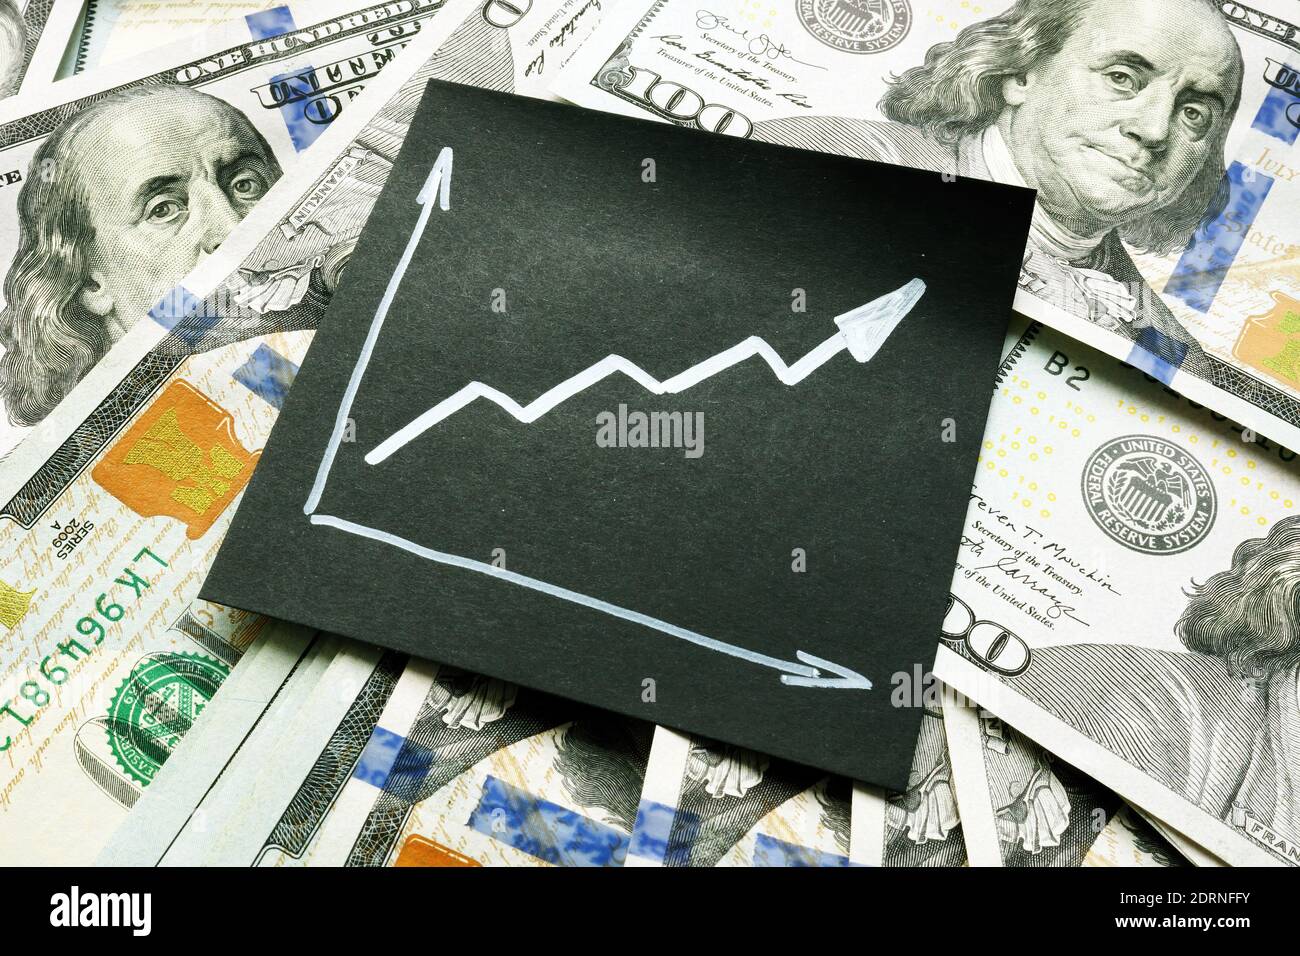 Finanzieller Erfolg im Geschäft und Wachstum der Einsparungen. Steigender Pfeil und Geld. Stockfoto